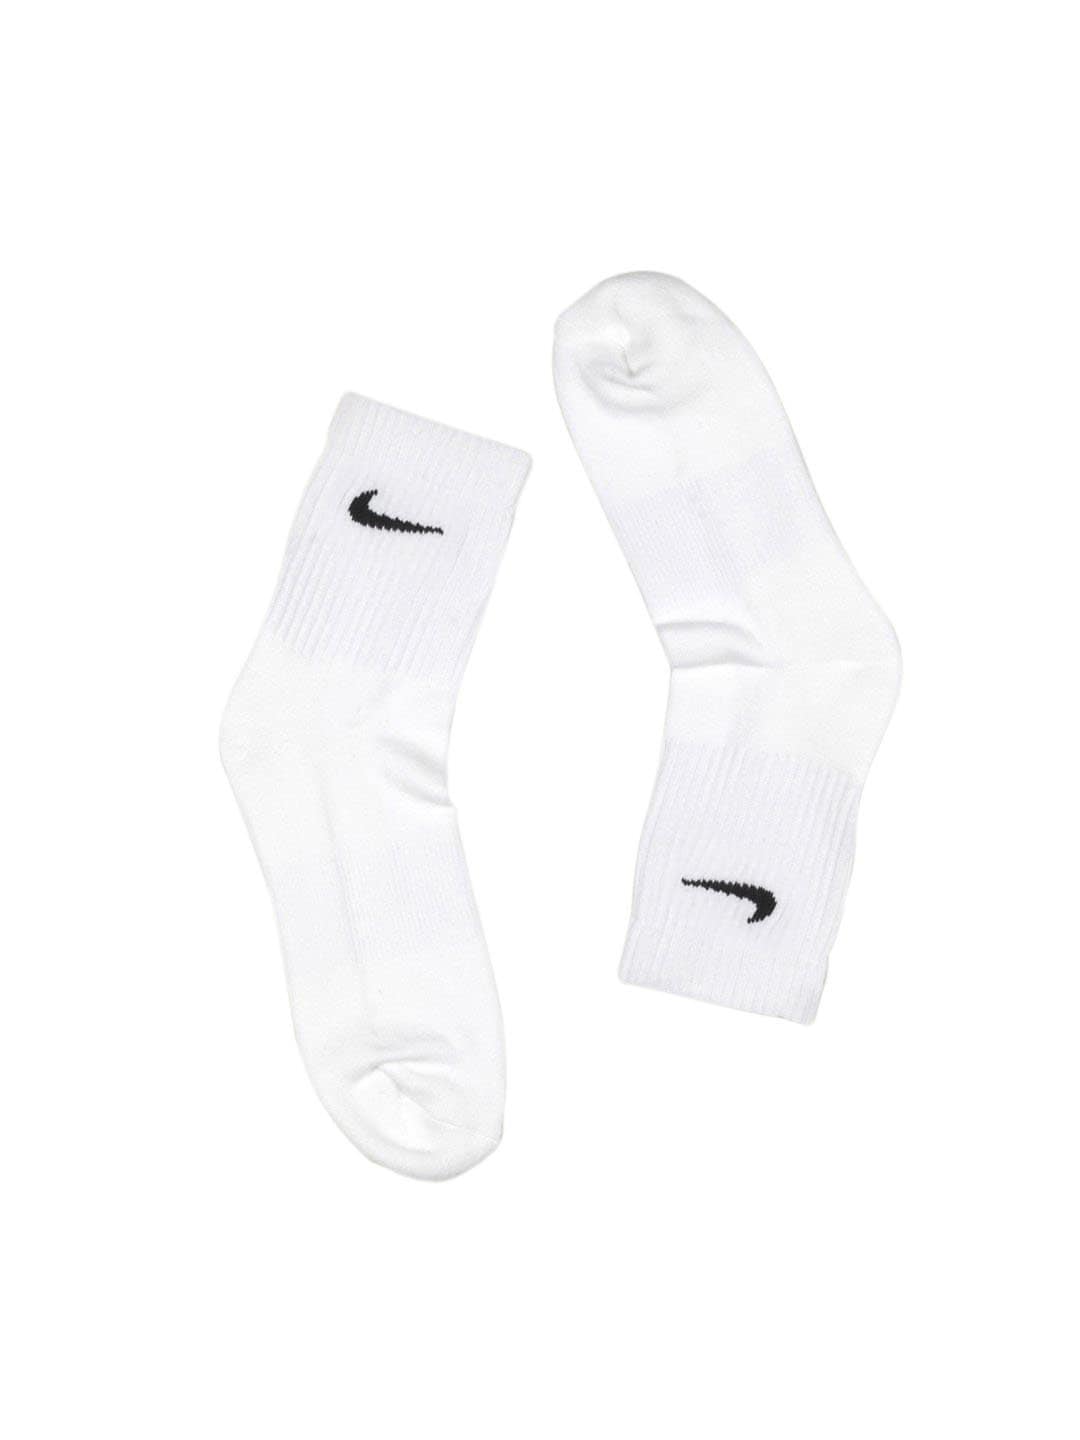 Nike Men's New Ap Swsh C White Socks